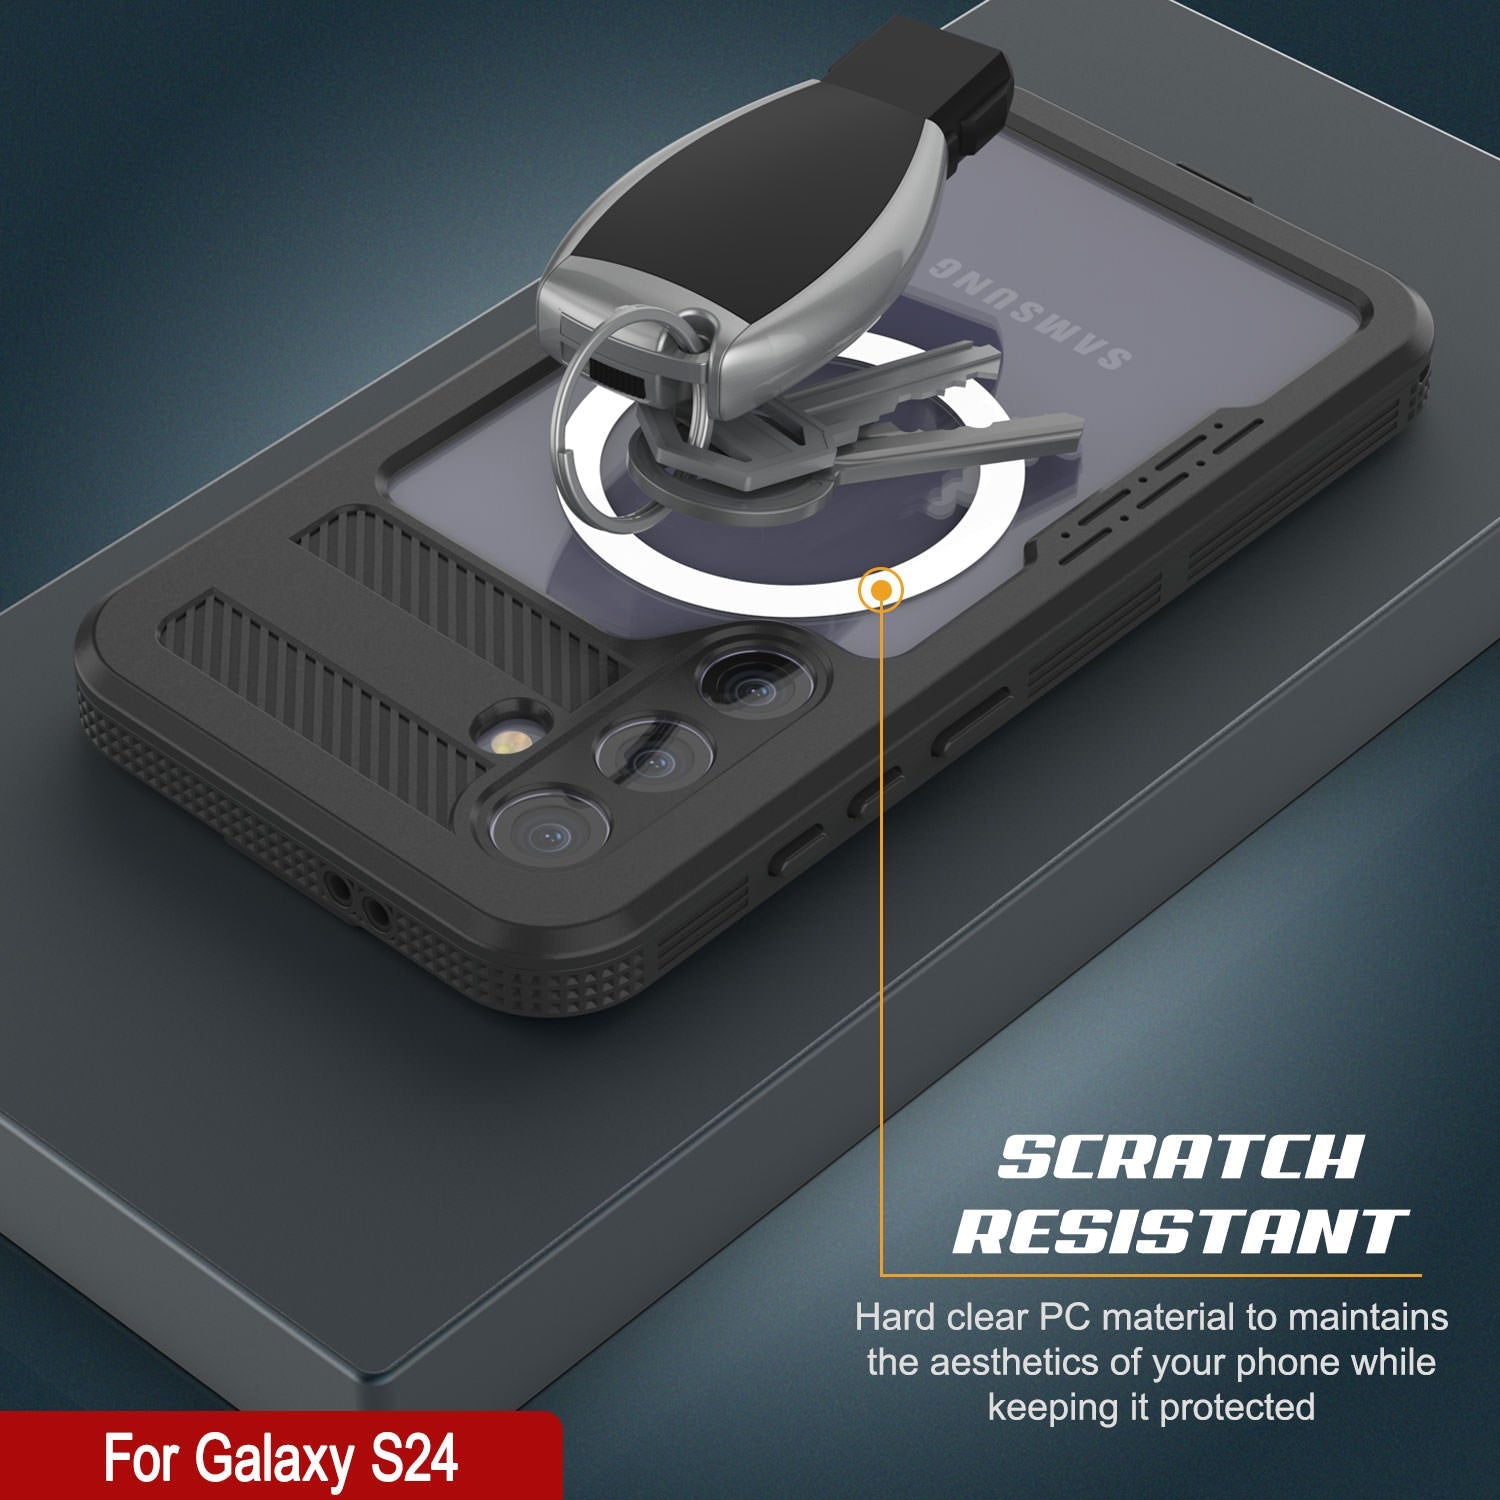 Galaxy S24 Waterproof Case [Alpine 2.0 Series] [Slim Fit] [IP68 Certified] [Shockproof] [Clear]